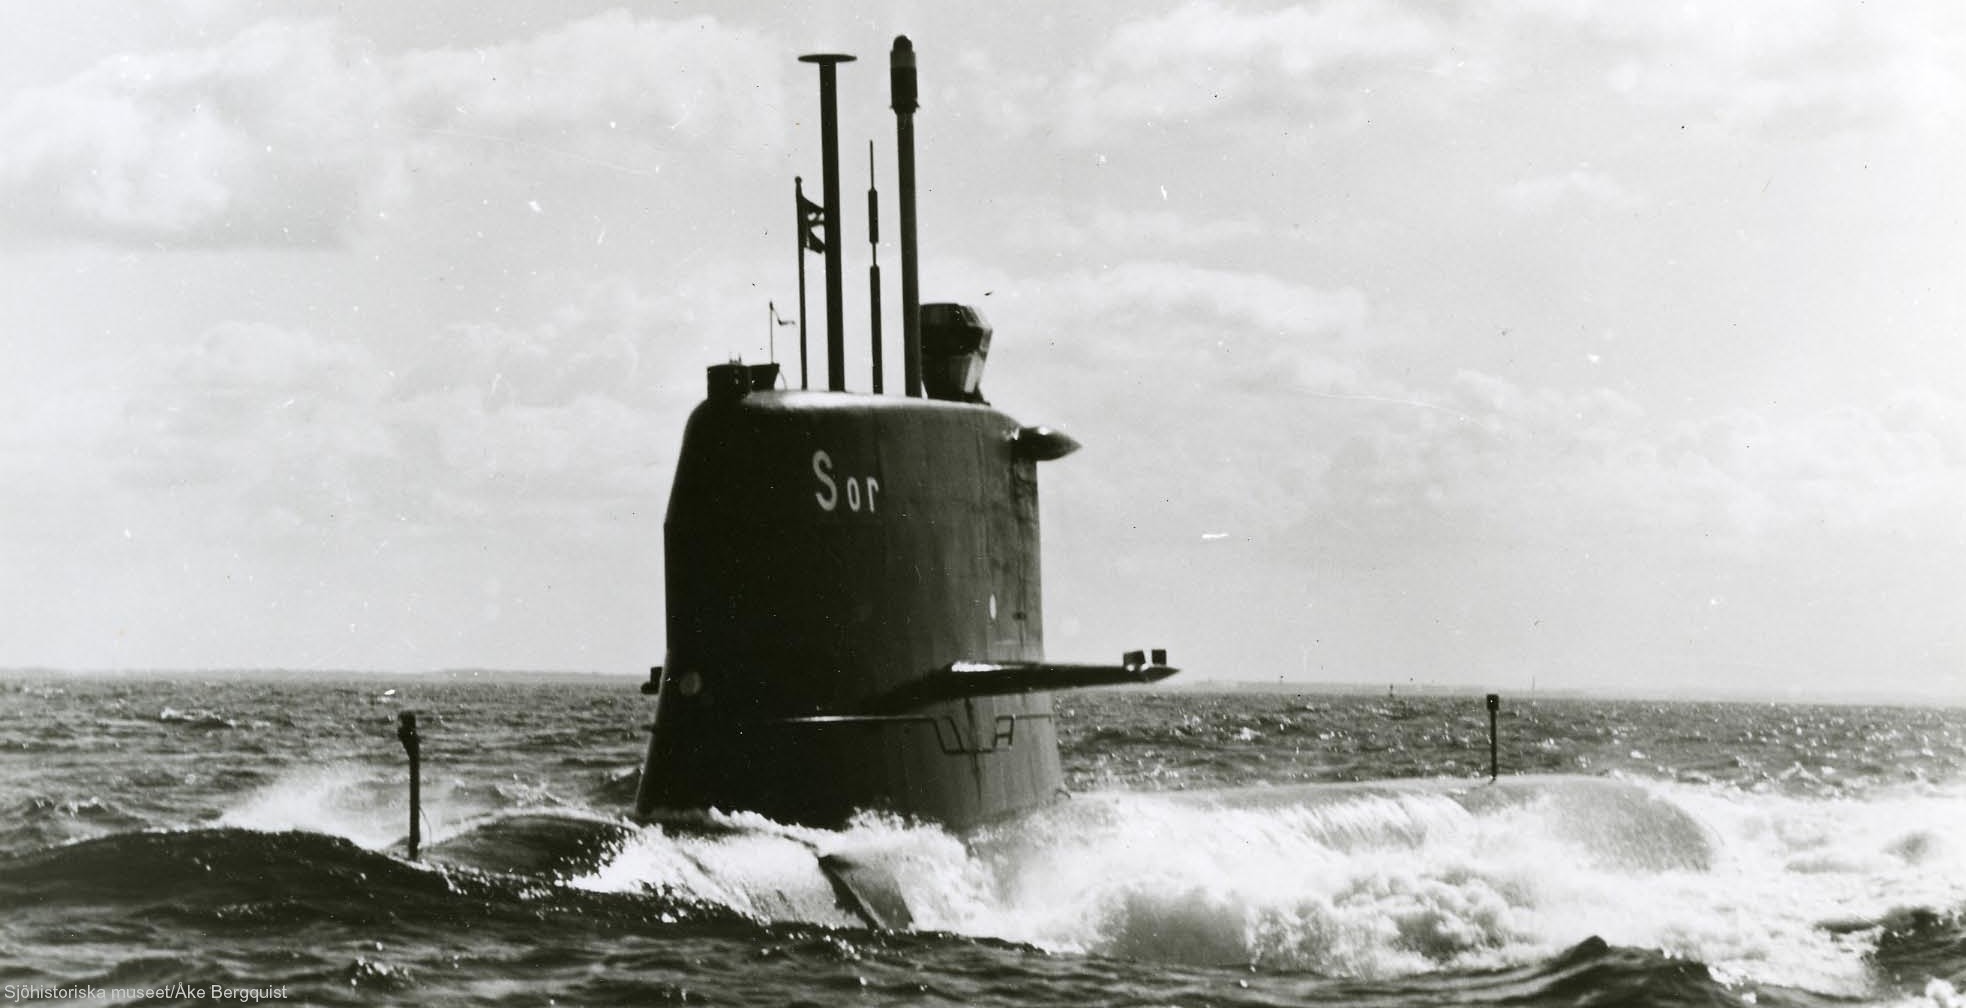 hswms hms sjöormen sjo a11 class submarine ssk swedish navy svenska marinen försvarsmakten 05